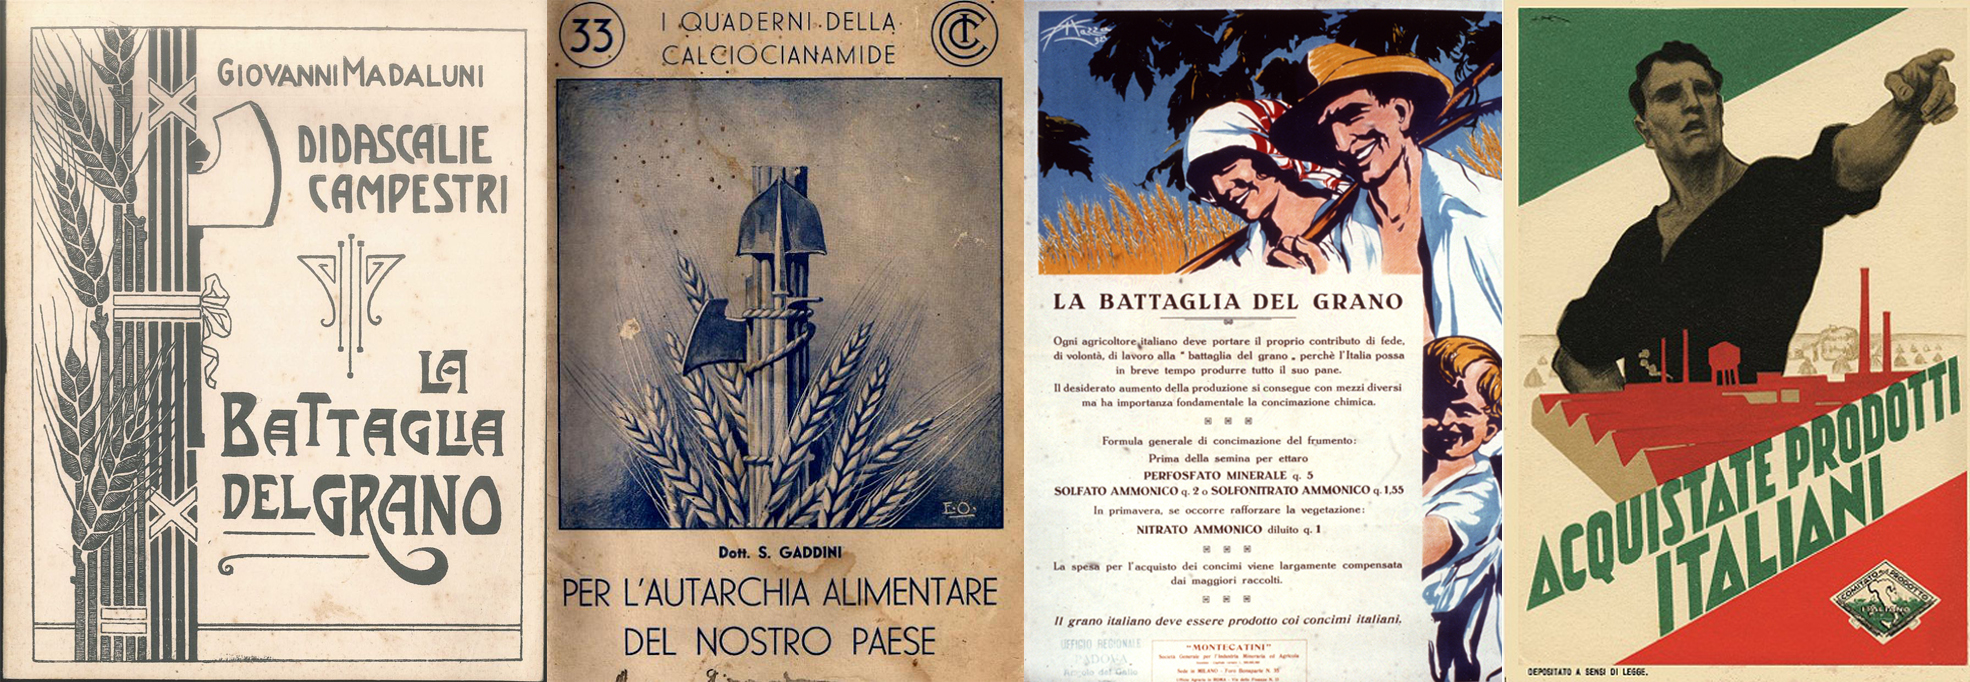 Alcuni manifesti propagandistici della battaglia del grano